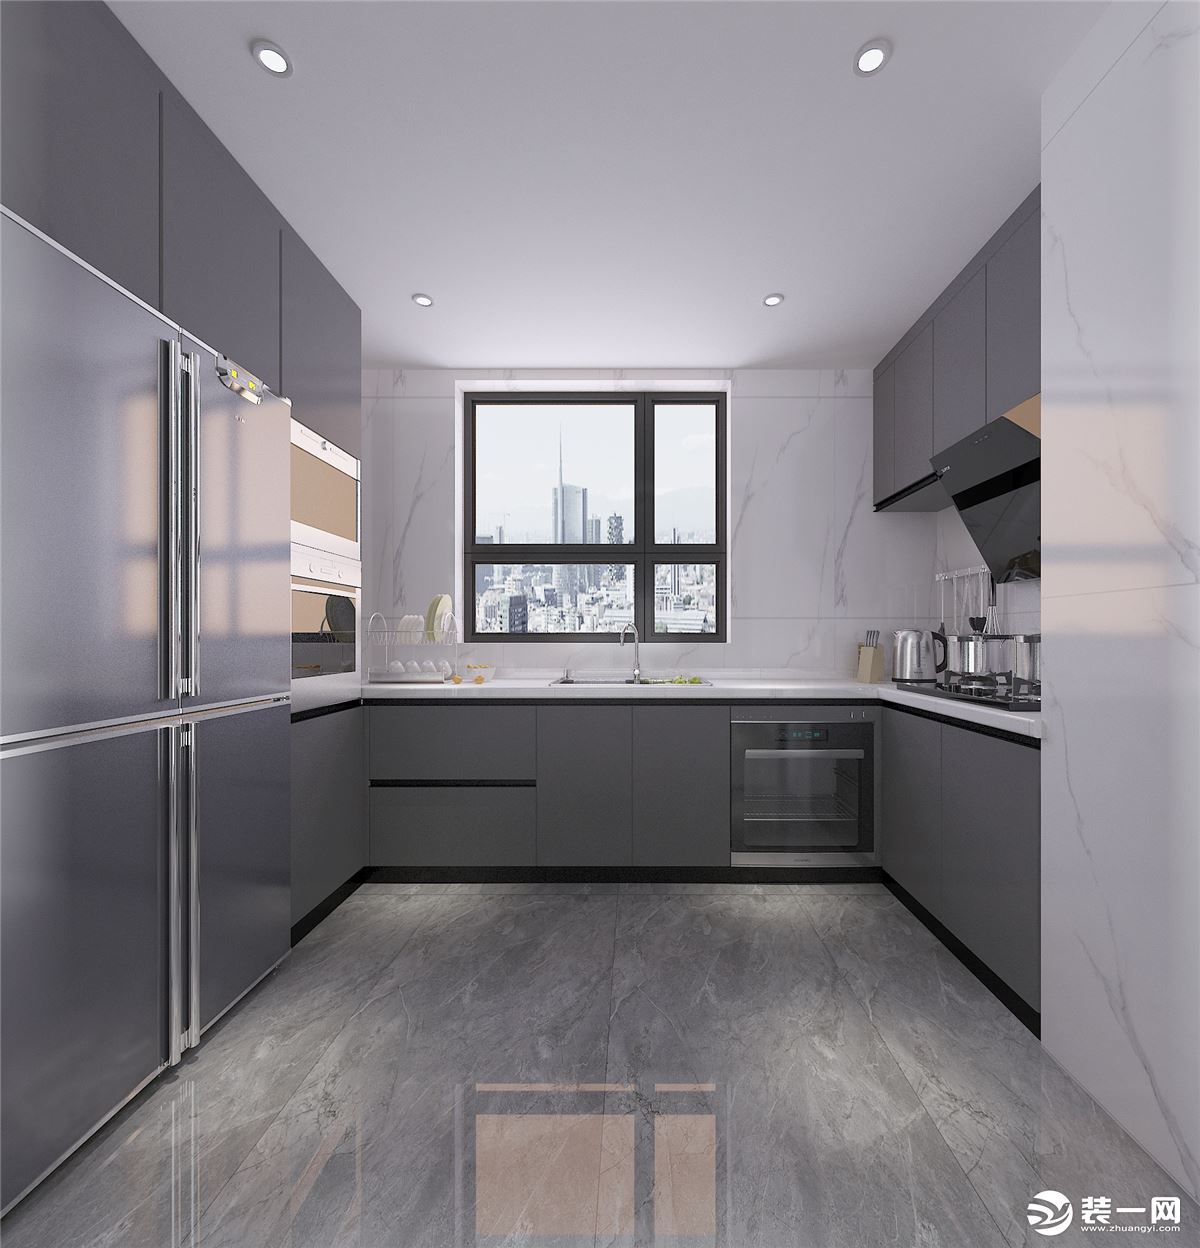 4.厨房：厨房U型橱柜设计，增加高柜内嵌蒸烤一体机和冰箱，使用起来更加方便，也不占用空间，地柜和吊柜